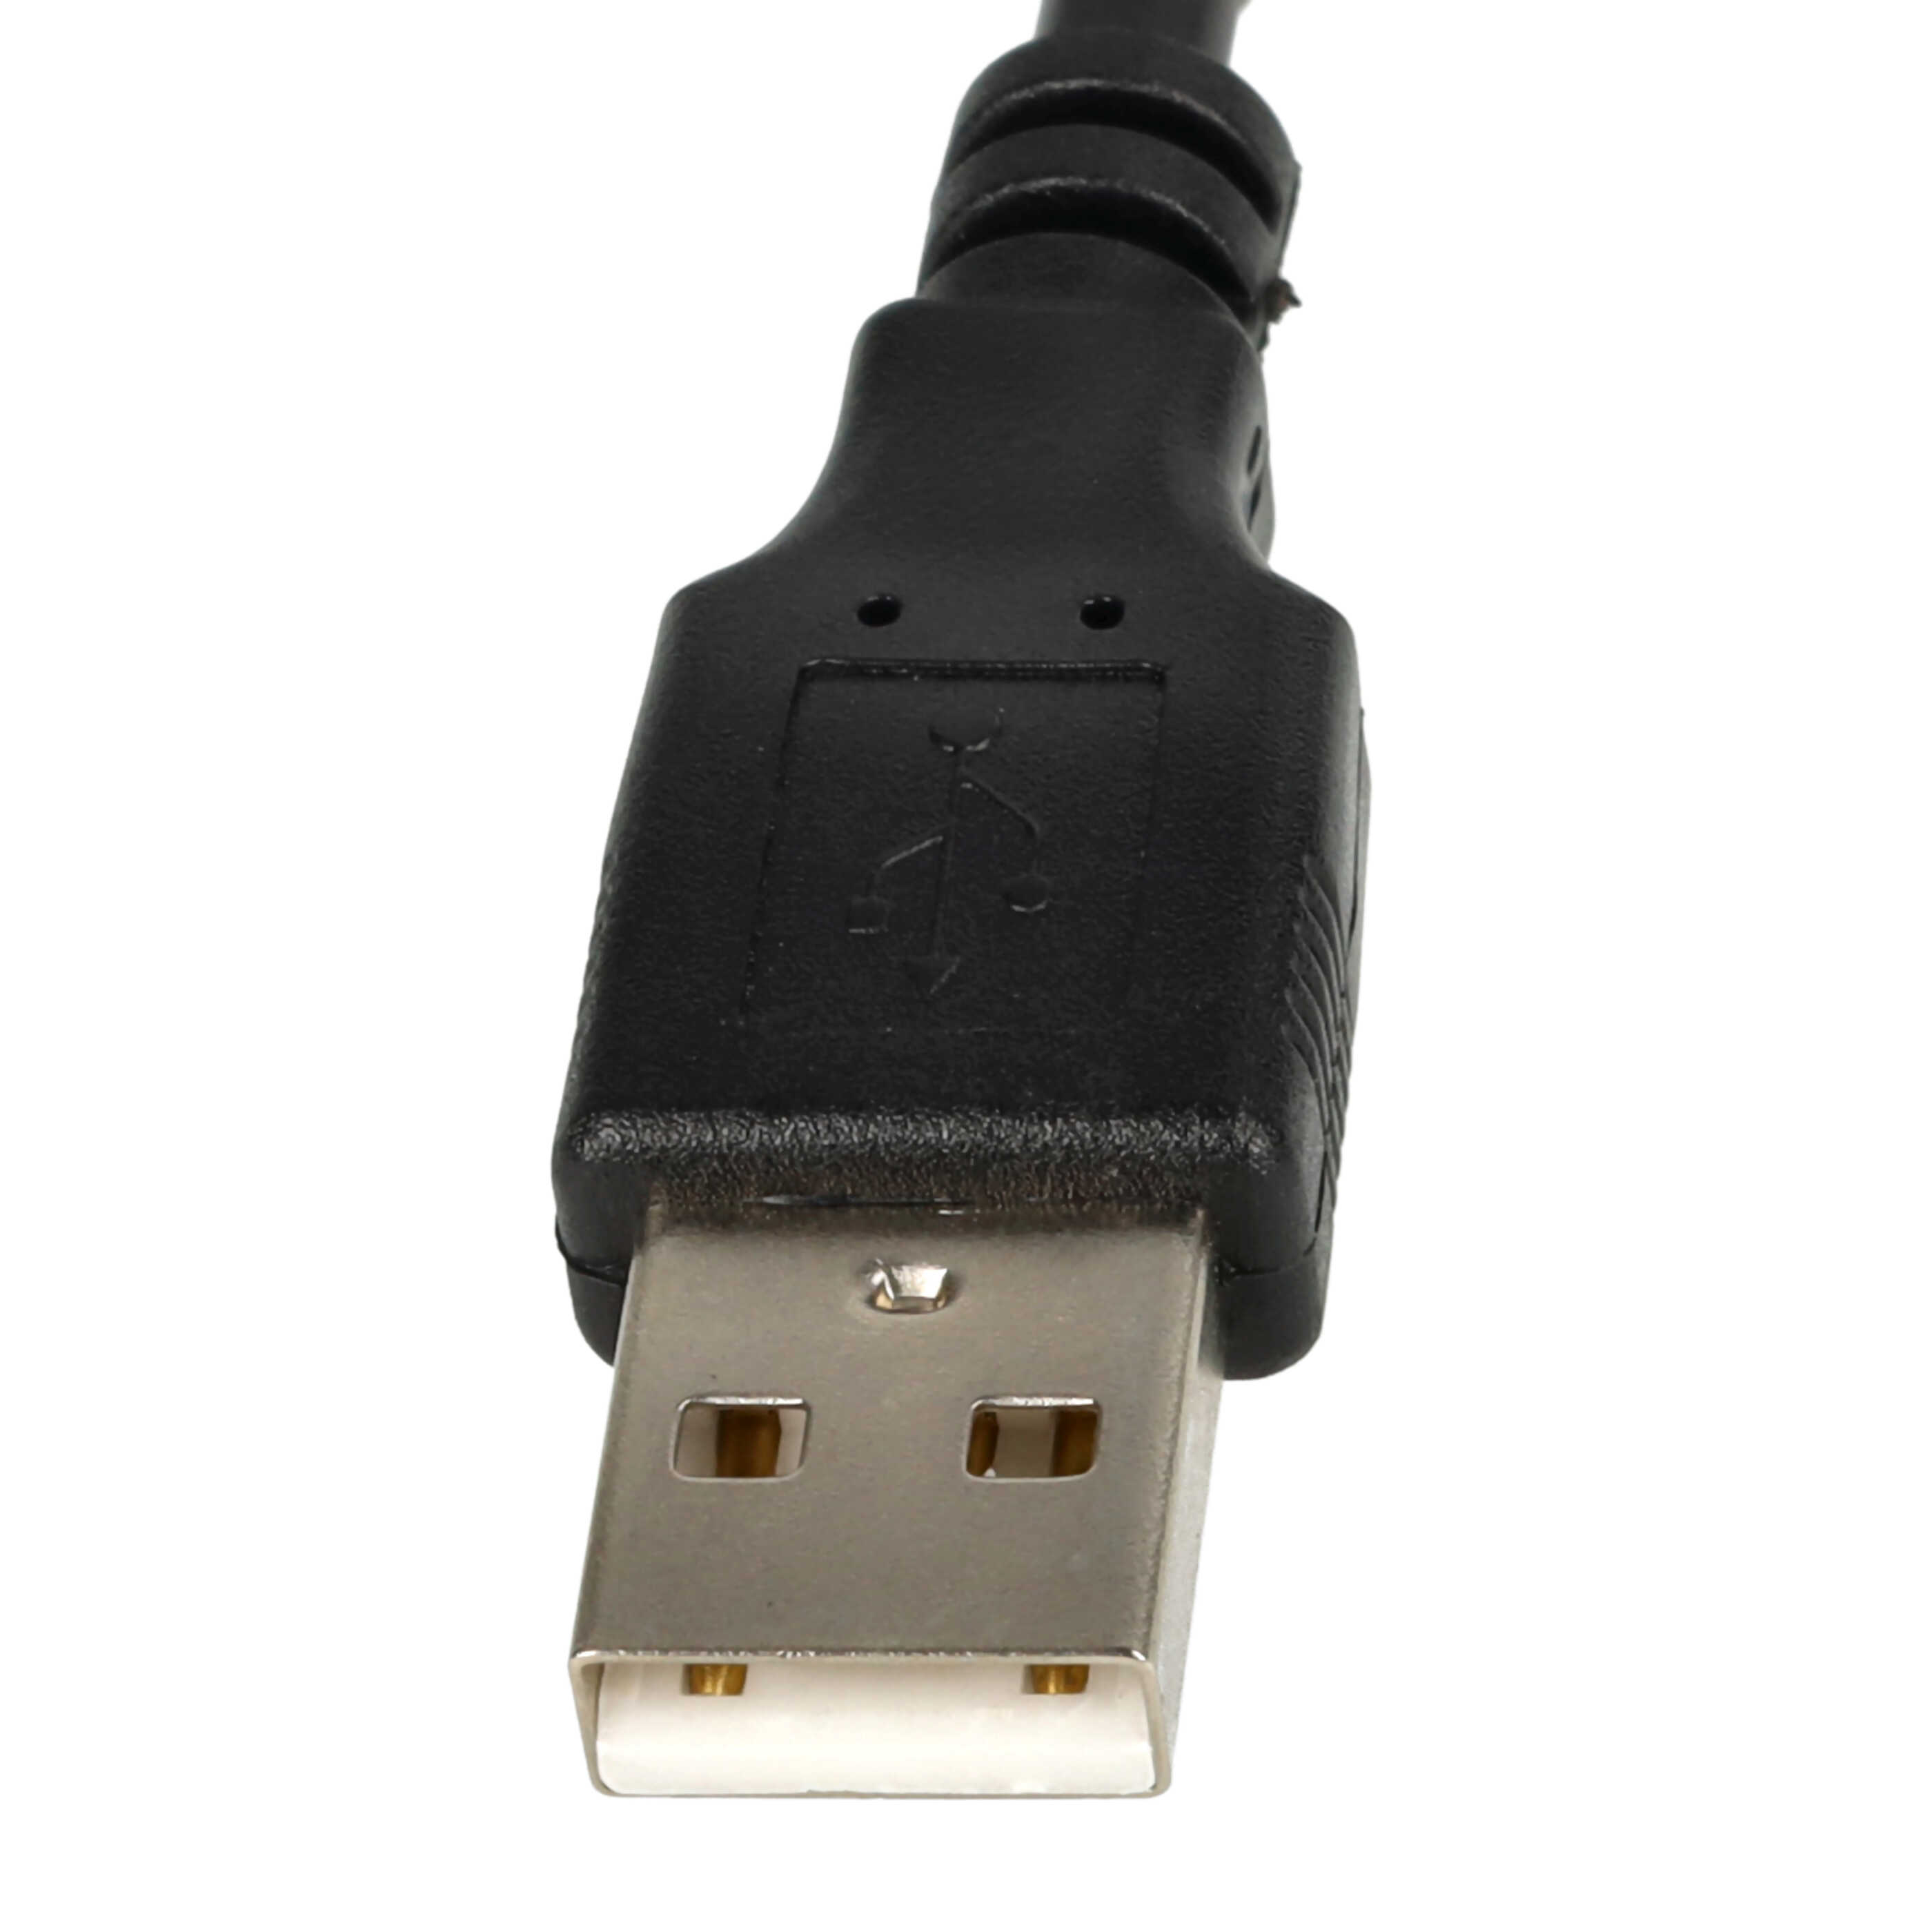 vhbw cavo AV USB - RCA compatibile con HDD-Player, impianti AV-stereo - Connettori USB A 2.0 & 3 RCA, 1,4m, ne